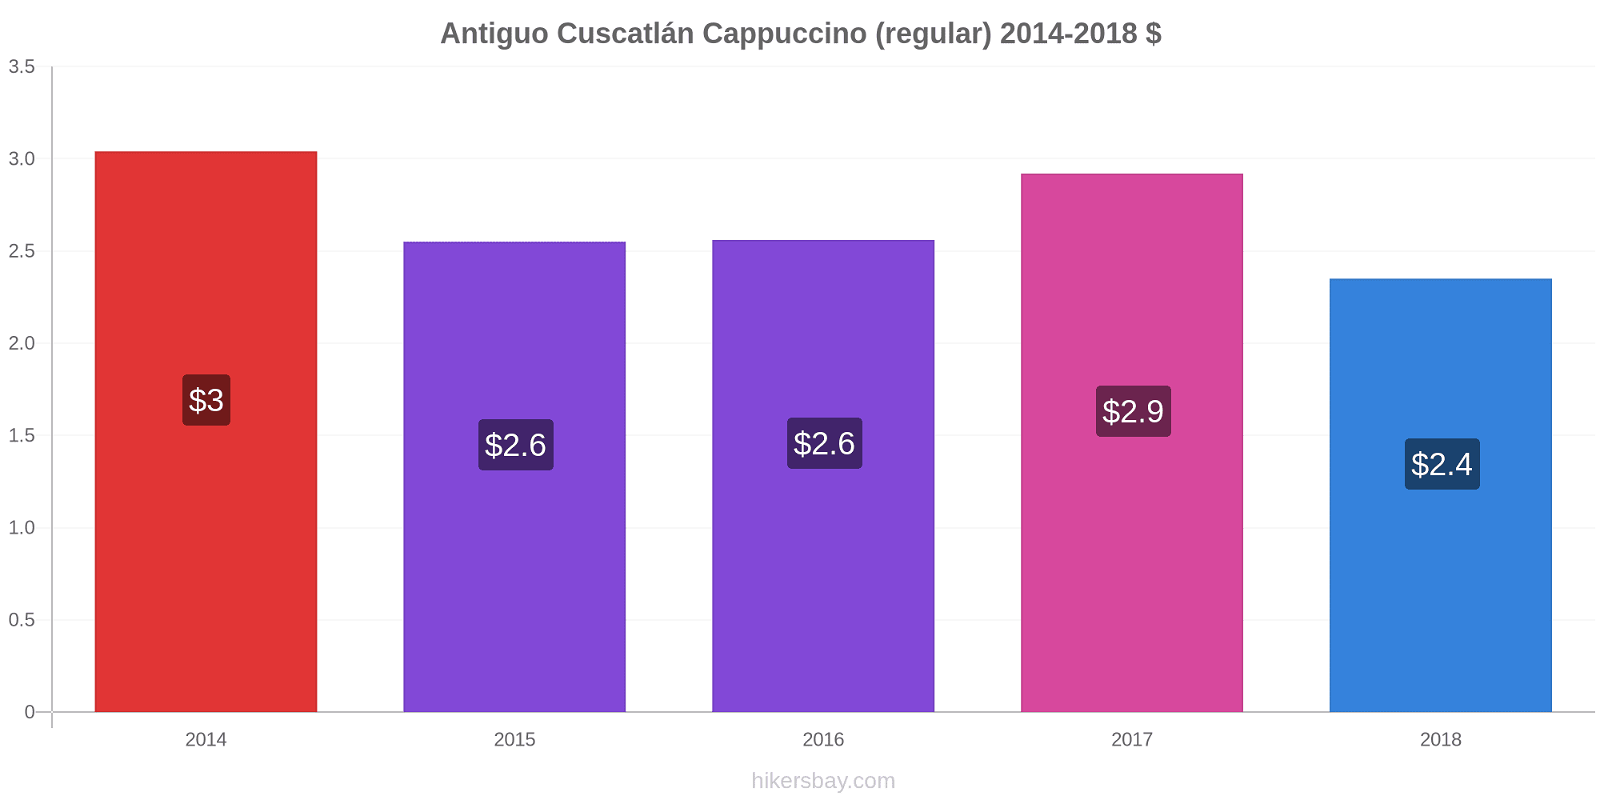 Antiguo Cuscatlán variação de preço Capuccino (regular) hikersbay.com